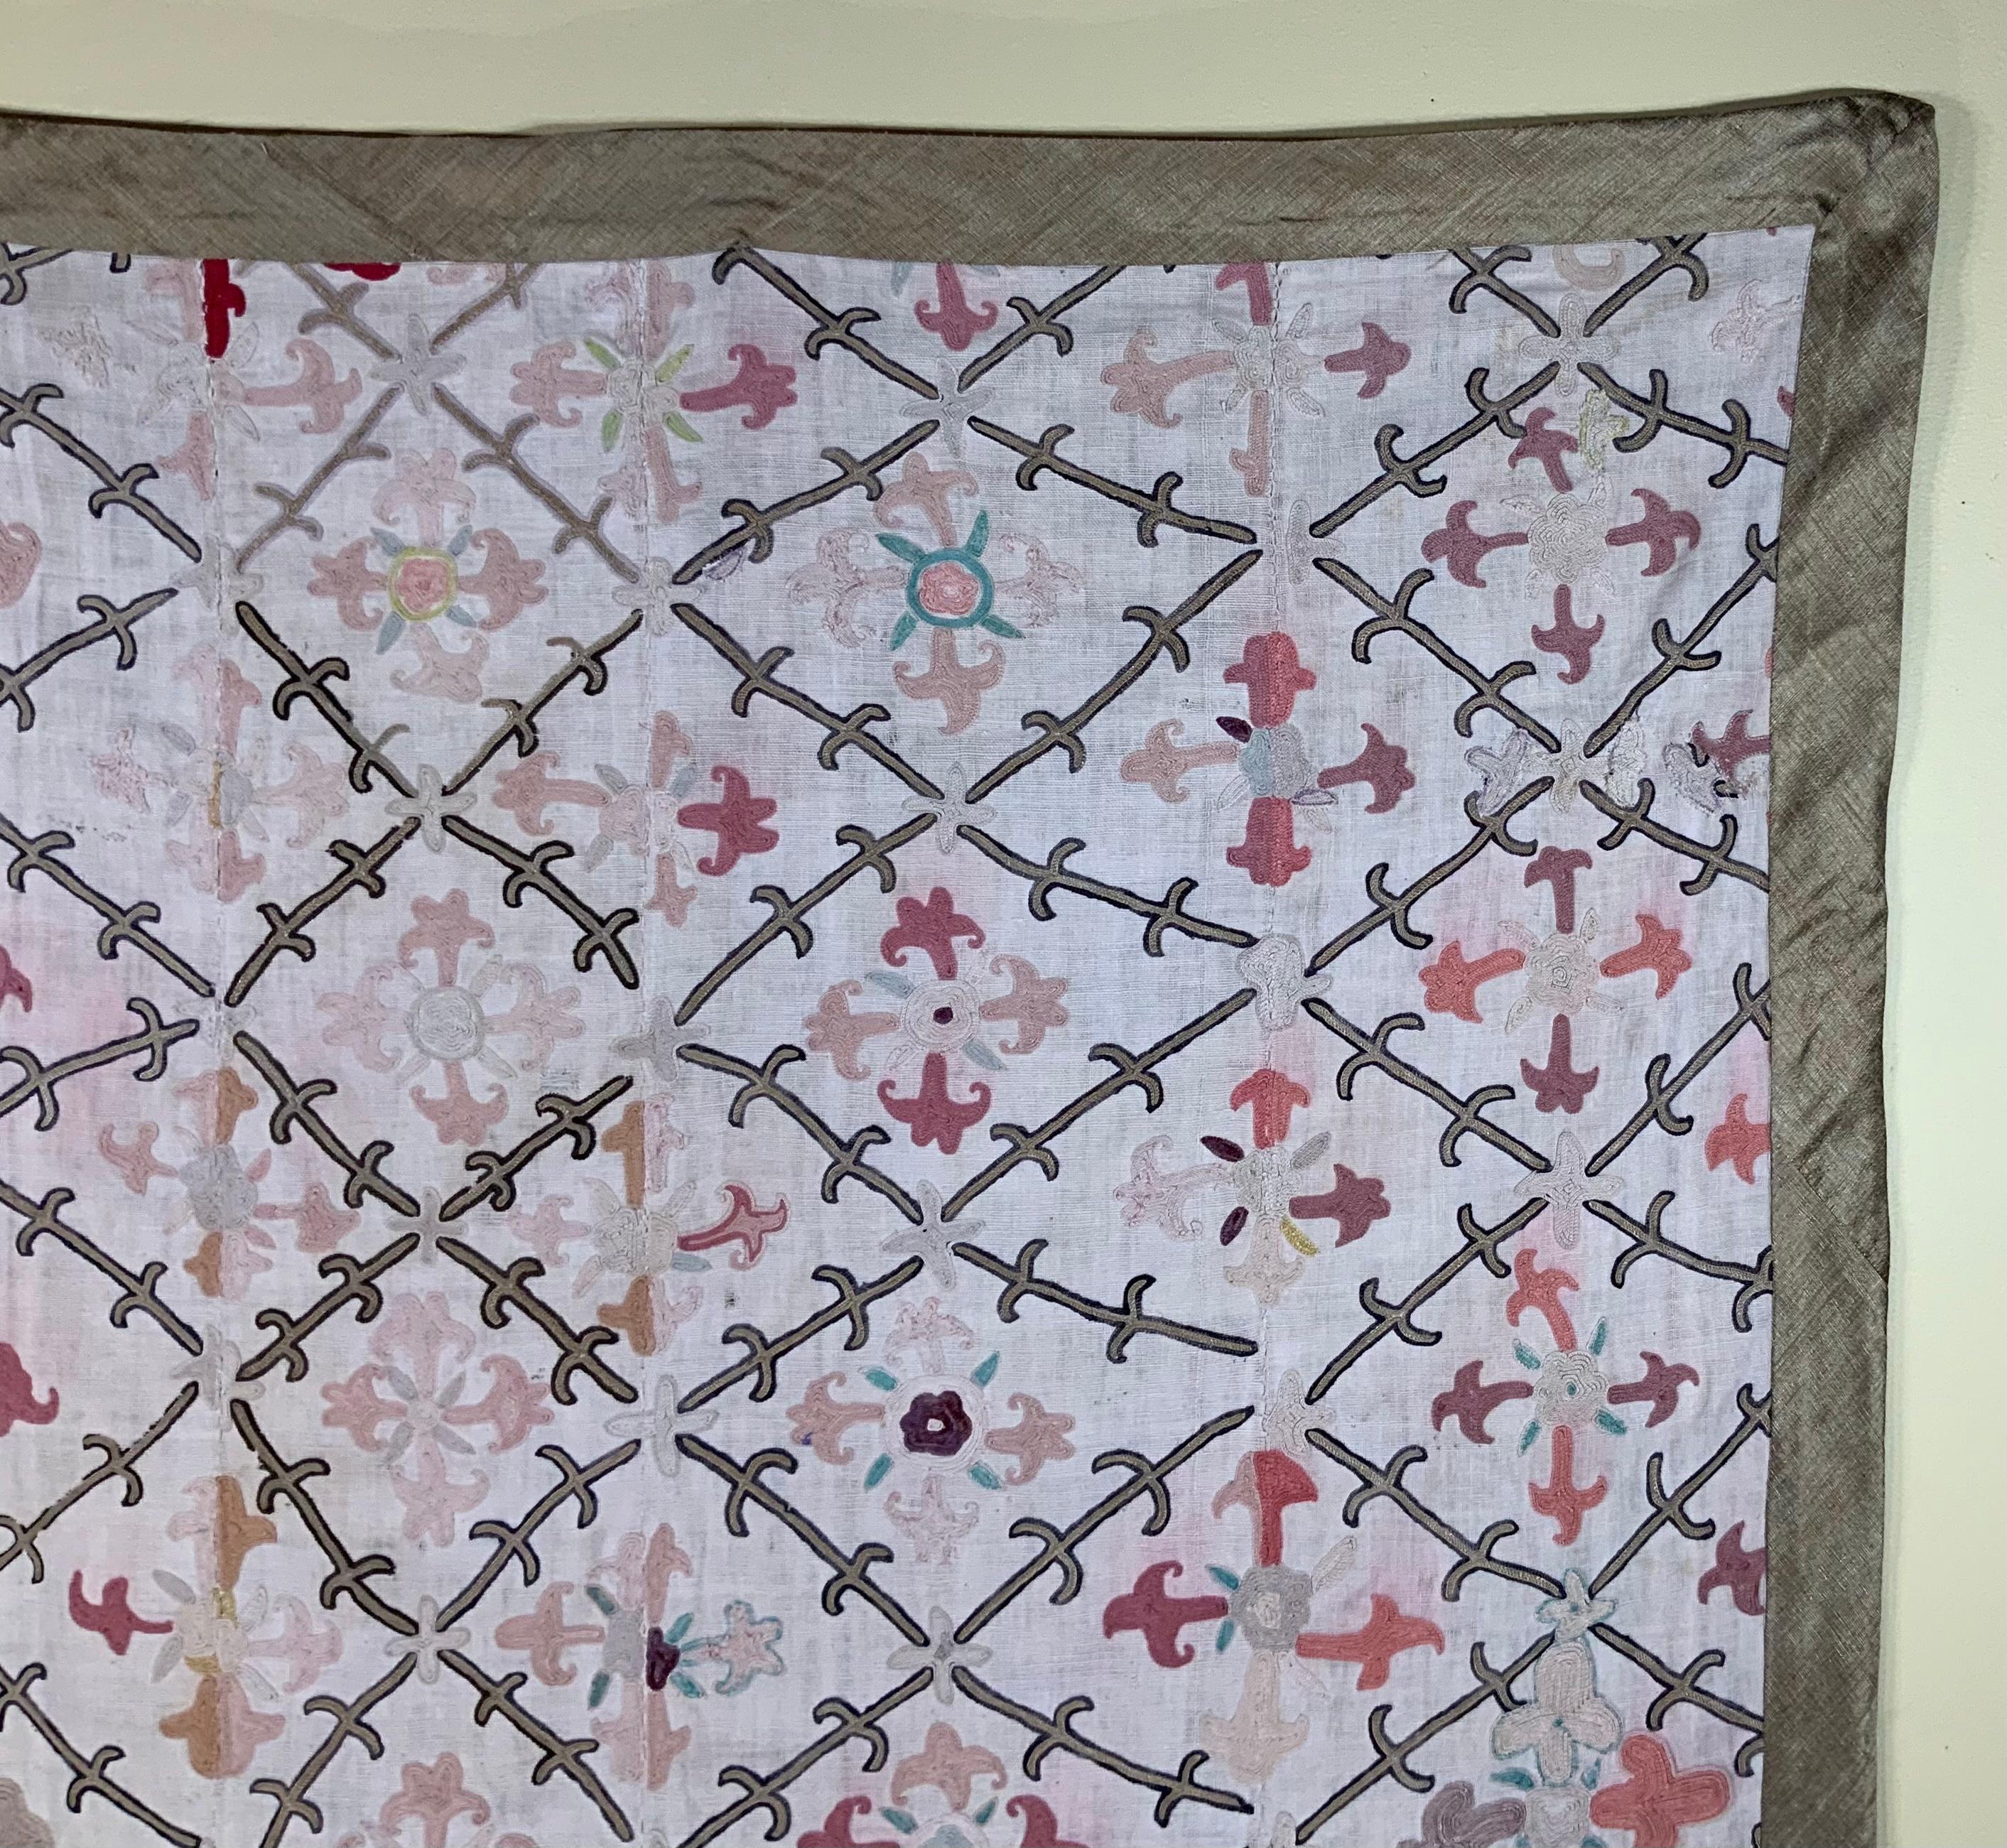 Antikes Suzani-Textil aus handgesticktem, kompliziertem Scrolling von acht großen Blumenmotiven auf einem handgewebten Baumwollgrund. Professionell gereinigt und mit feinem Textil hinterlegt.
Kann als Wandbehang oder auf einem Tisch oder einer